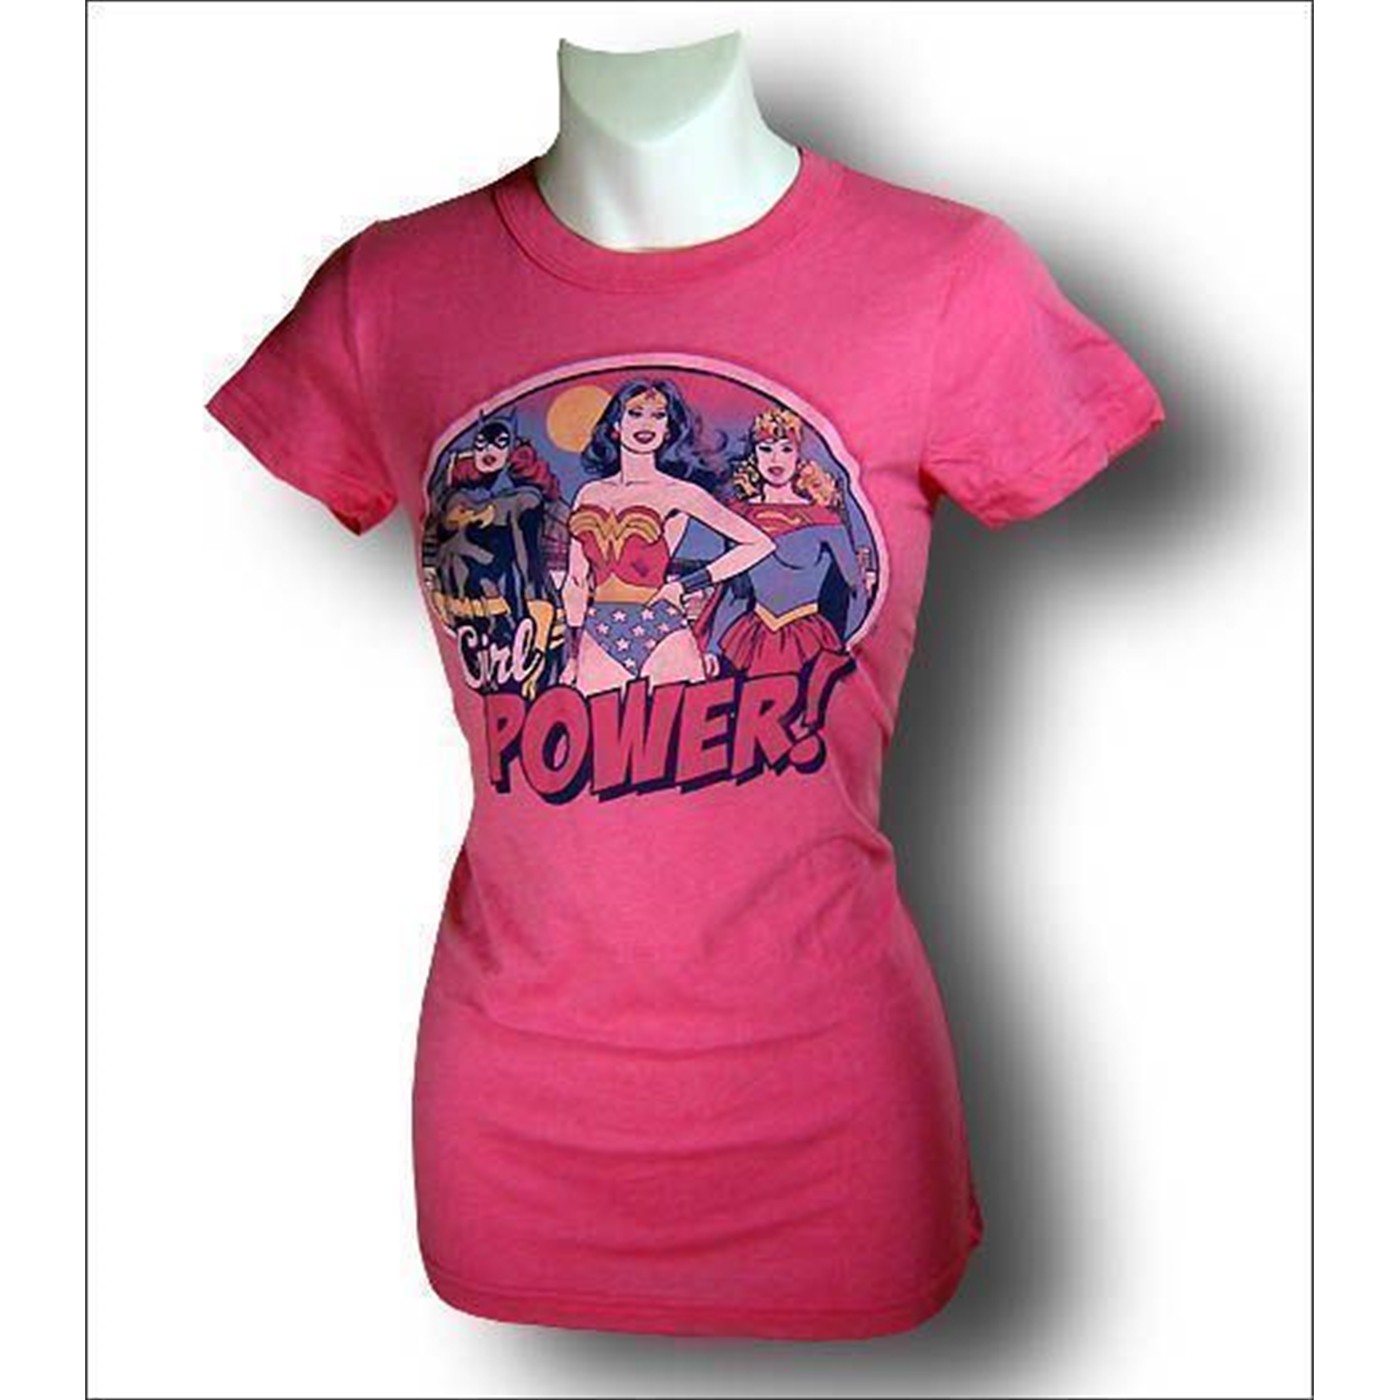 Wonder Woman Pink Girl Power Junior?s T-Shirt